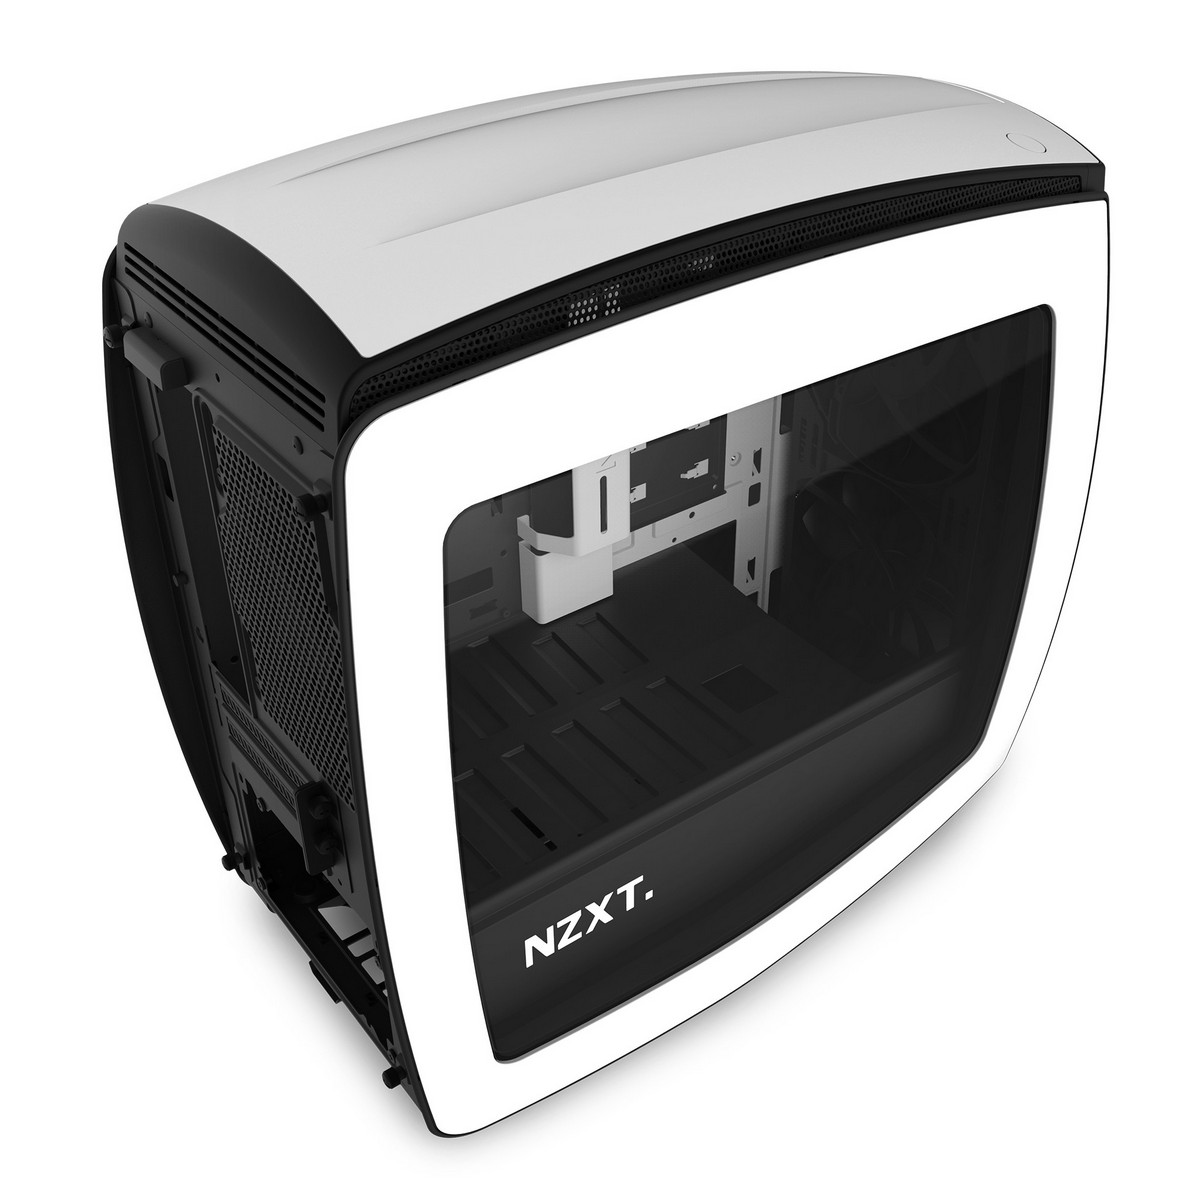 NZXT - NZXT Manta Mini-ITX Case - White Window